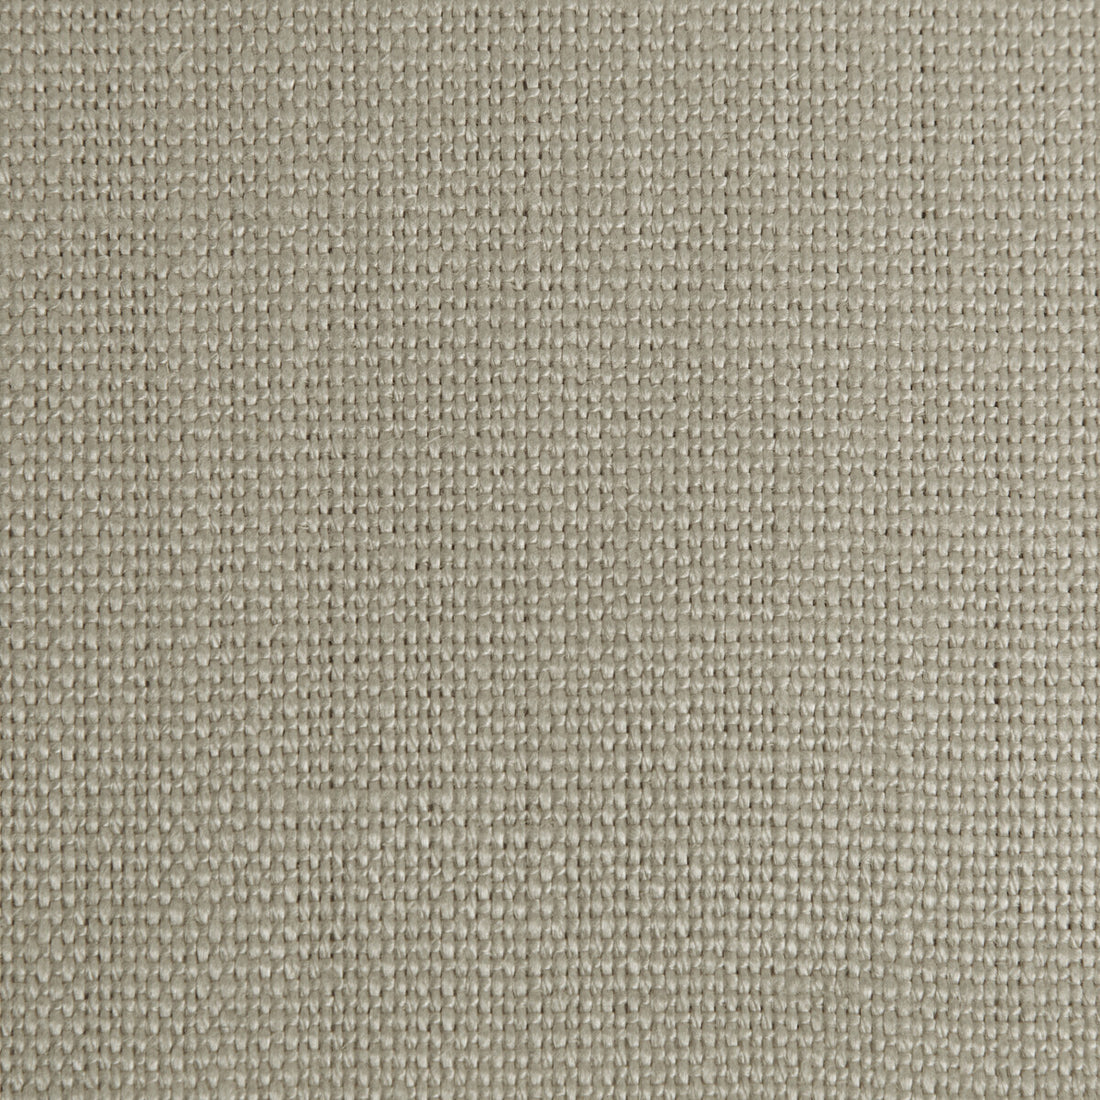 Stone Harbor fabric in fog color - pattern 27591.1600.0 - by Kravet Basics